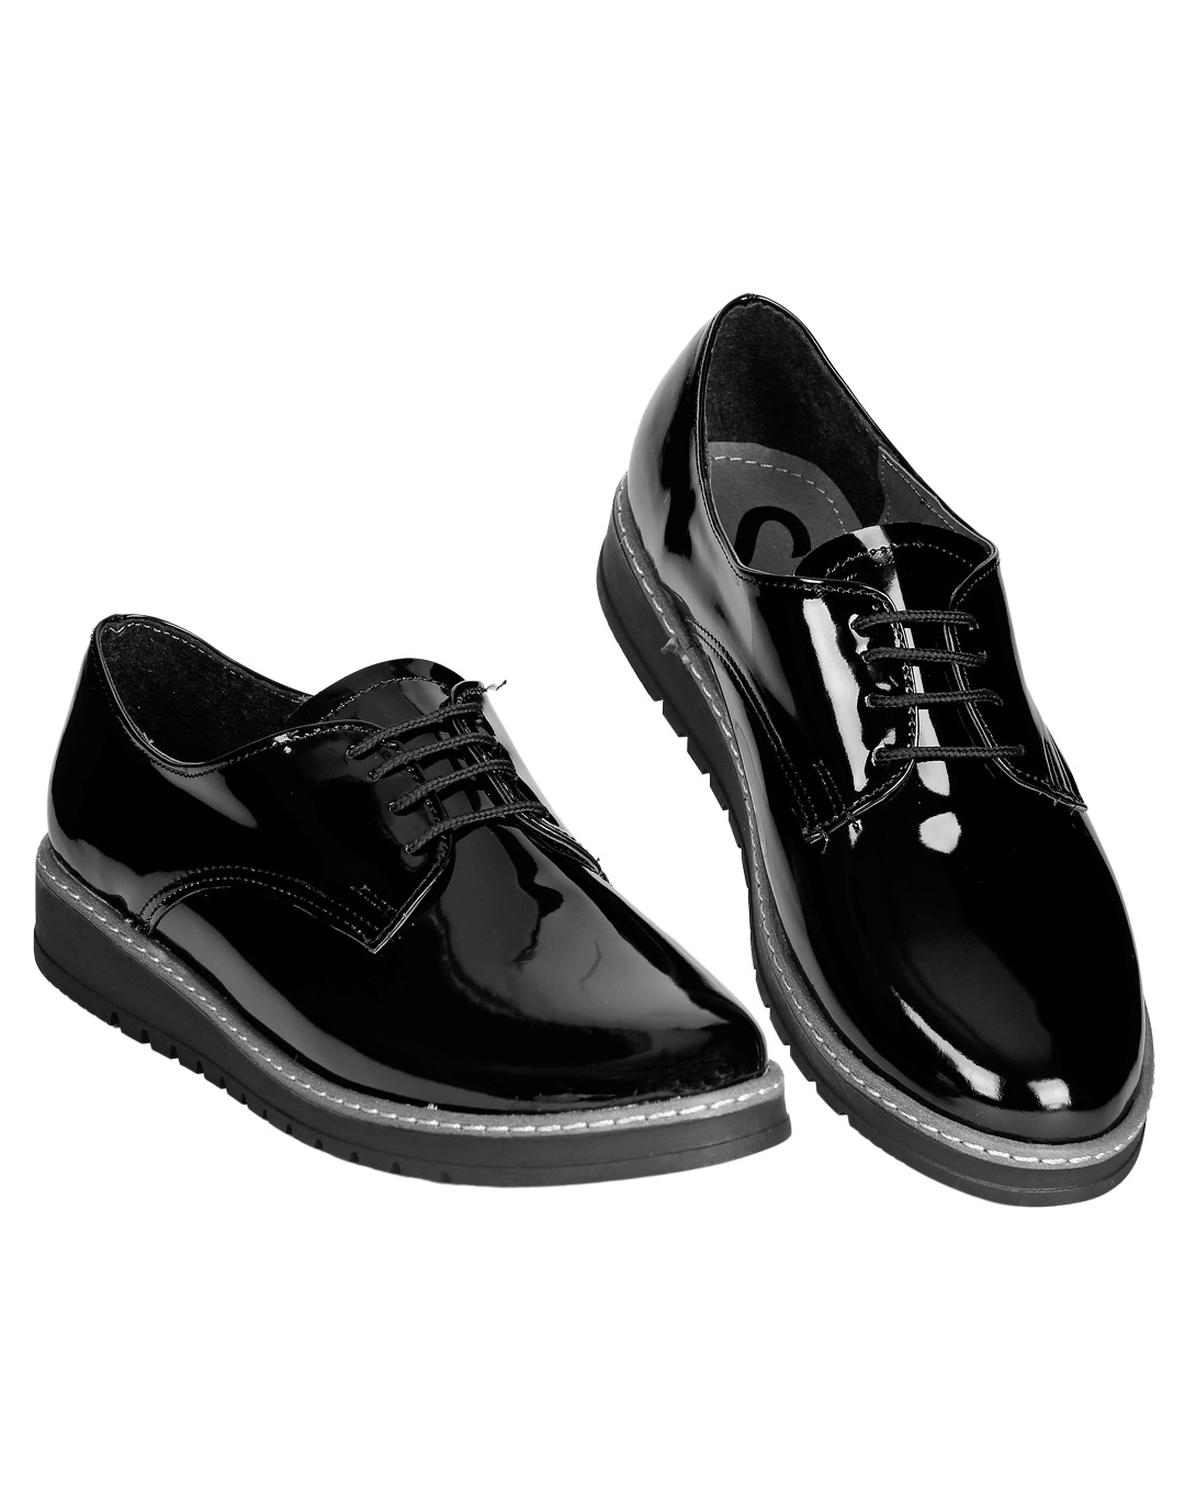 Zapato Casual Mujer Salvaje Tentación Negro 00302907 Tipo Charol